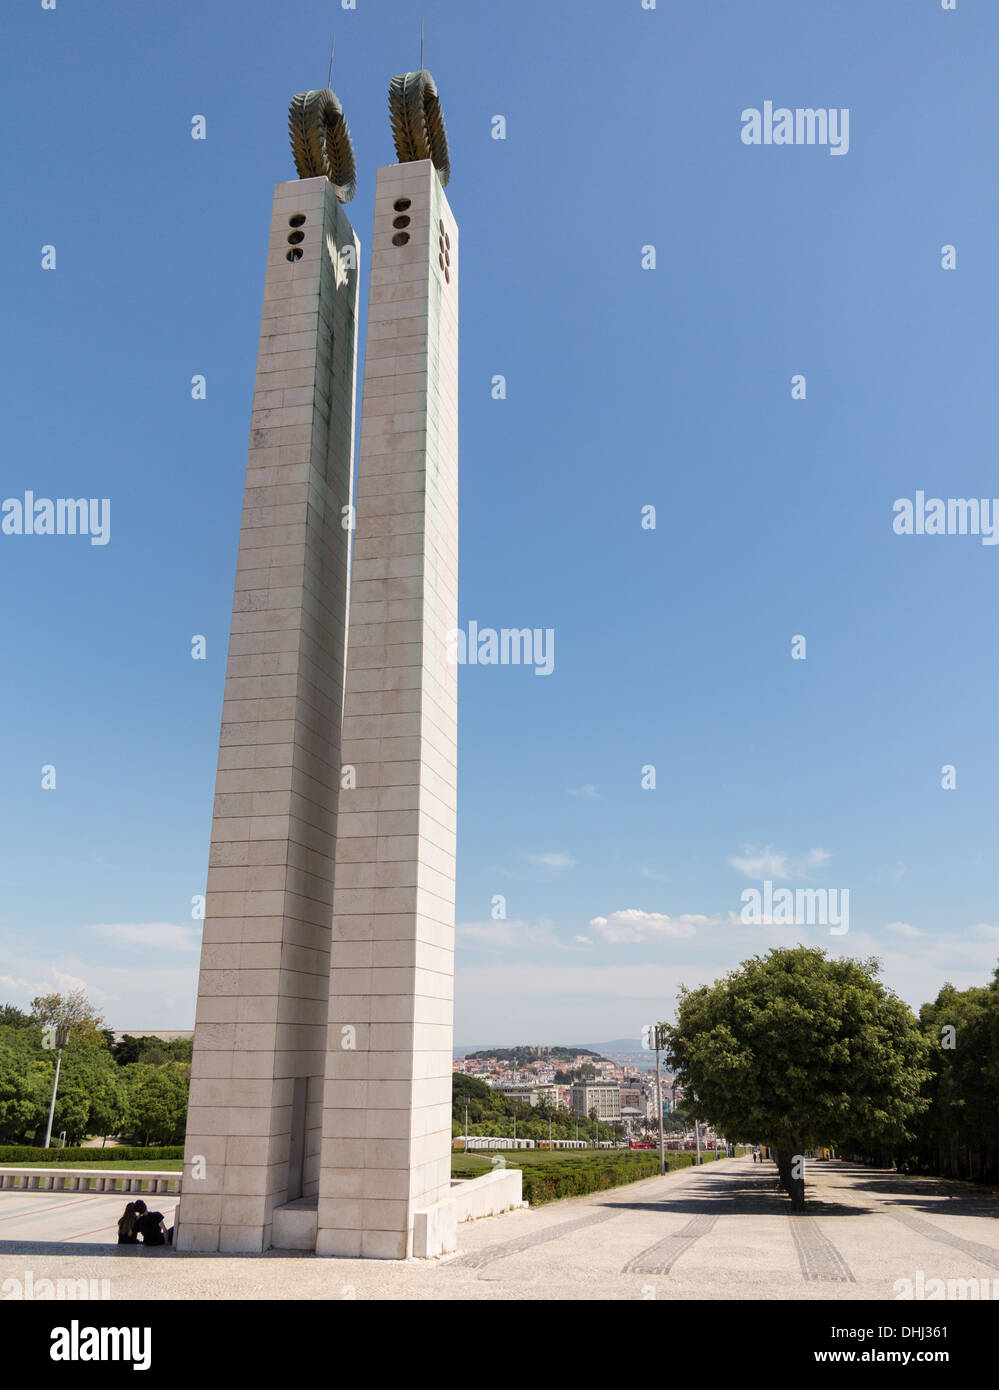 Monumento alla rivoluzione dei garofani in Edward VII Park, Lisbona, Portogallo. Foto Stock